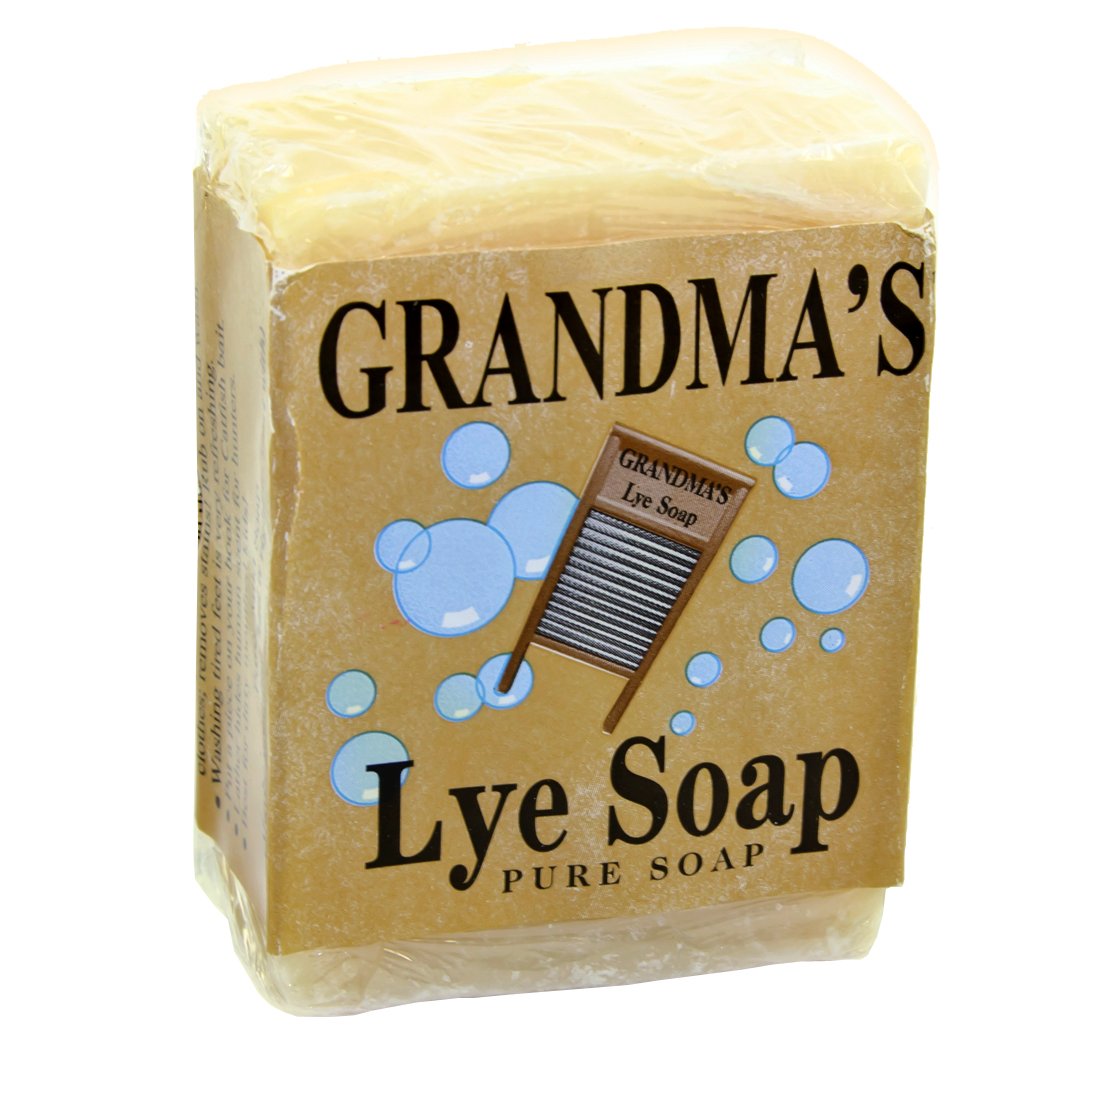 Grandma's Lye Soap - Cracker Barrel